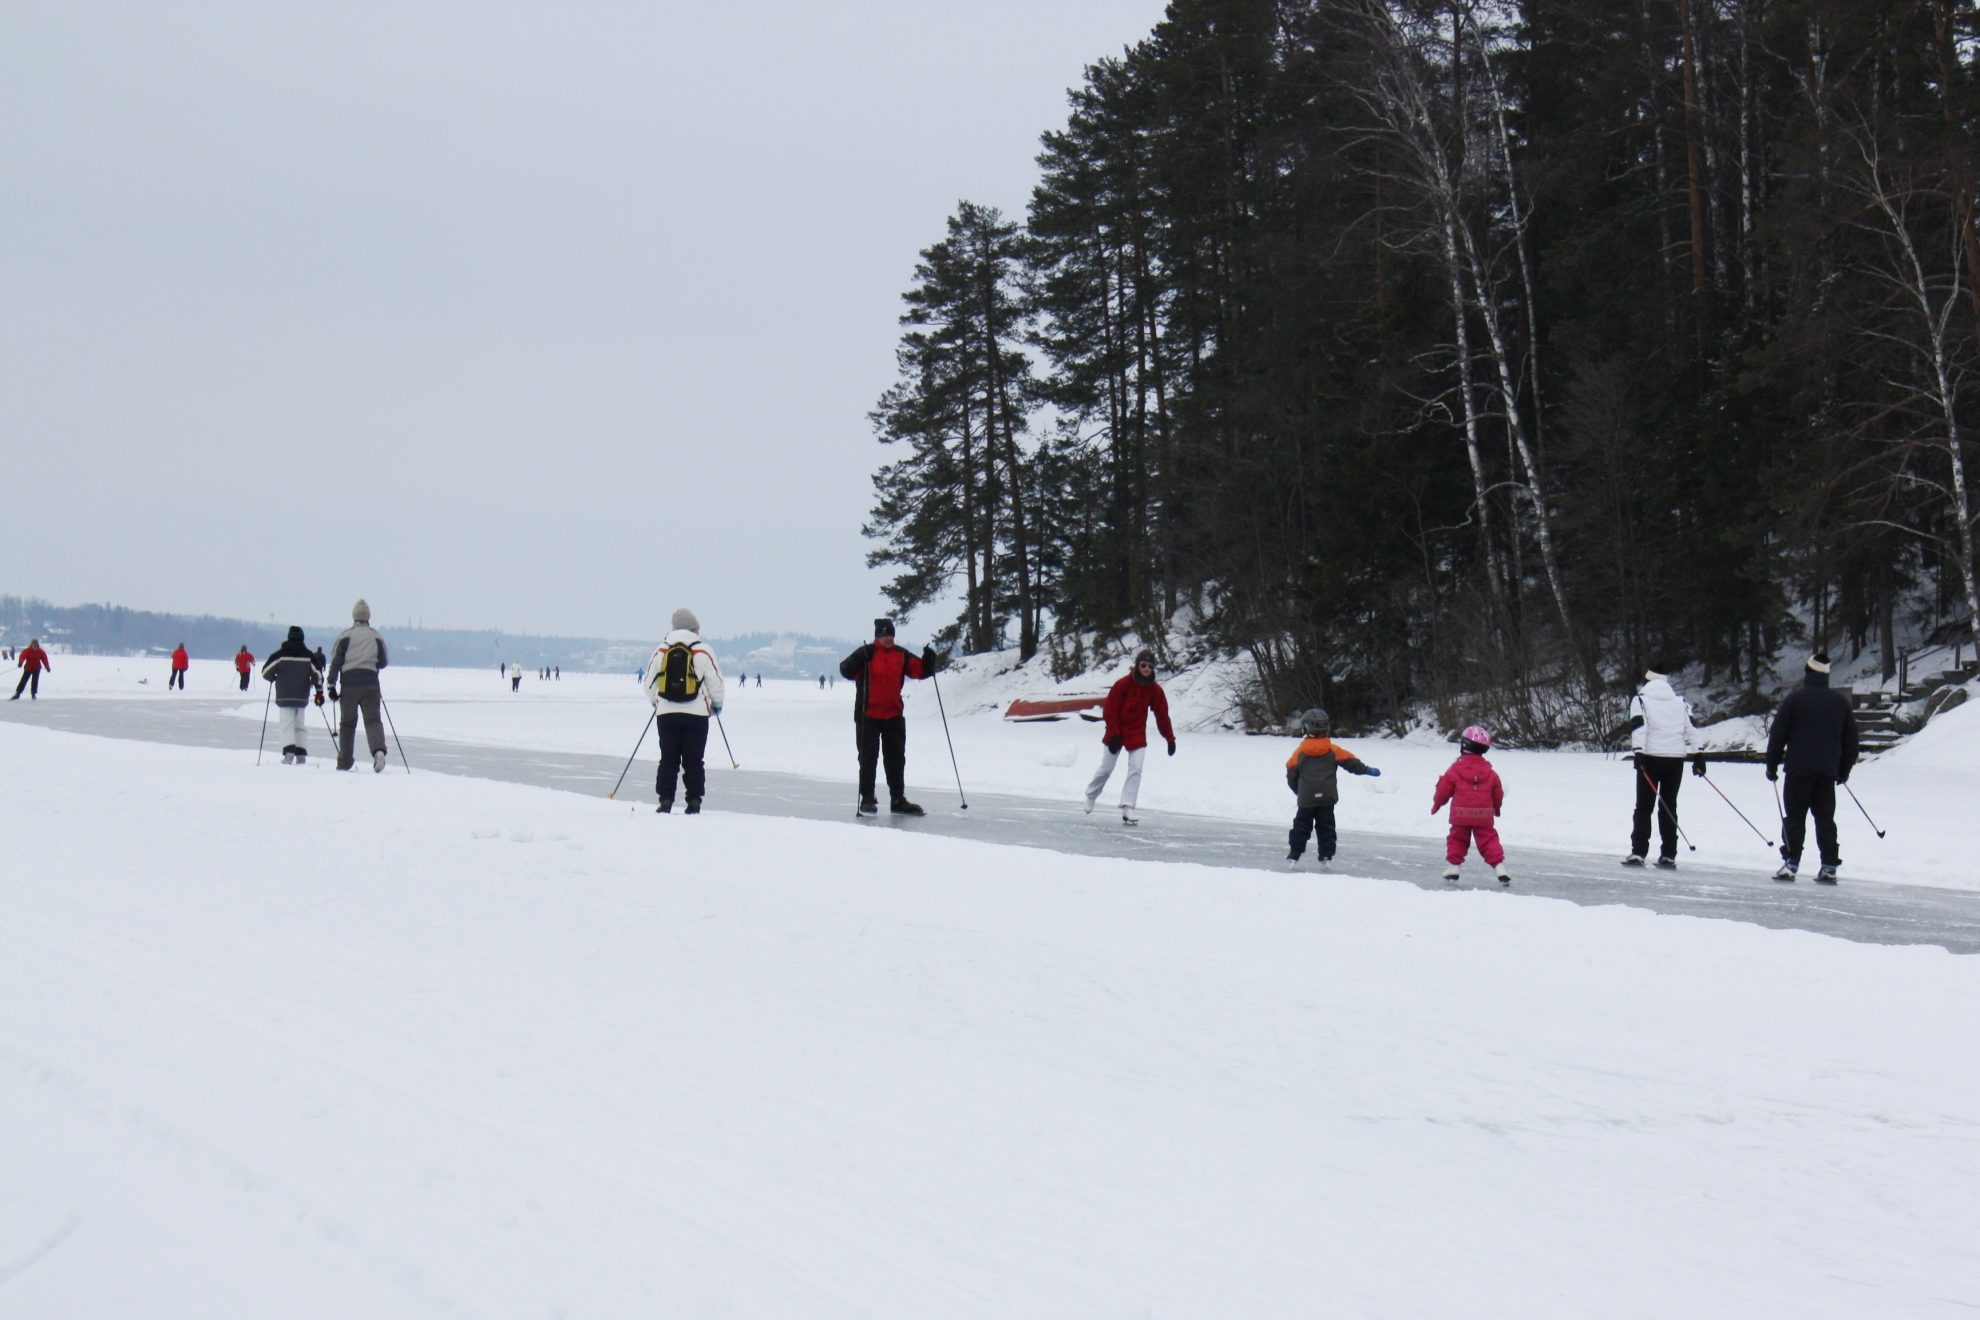 Lietuvoje įsitvirtinus šaltiems žiemiškiems orams, žmonės skuba džiaugtis aktyviu poilsiu ant ledo. Nors kai kurios savivaldybės gyventojams įrengia čiuožyklas, nemažai žmonių šaltomis žiemos dienomis susirenka pramogauti ant užšalusių vandens telkinių.